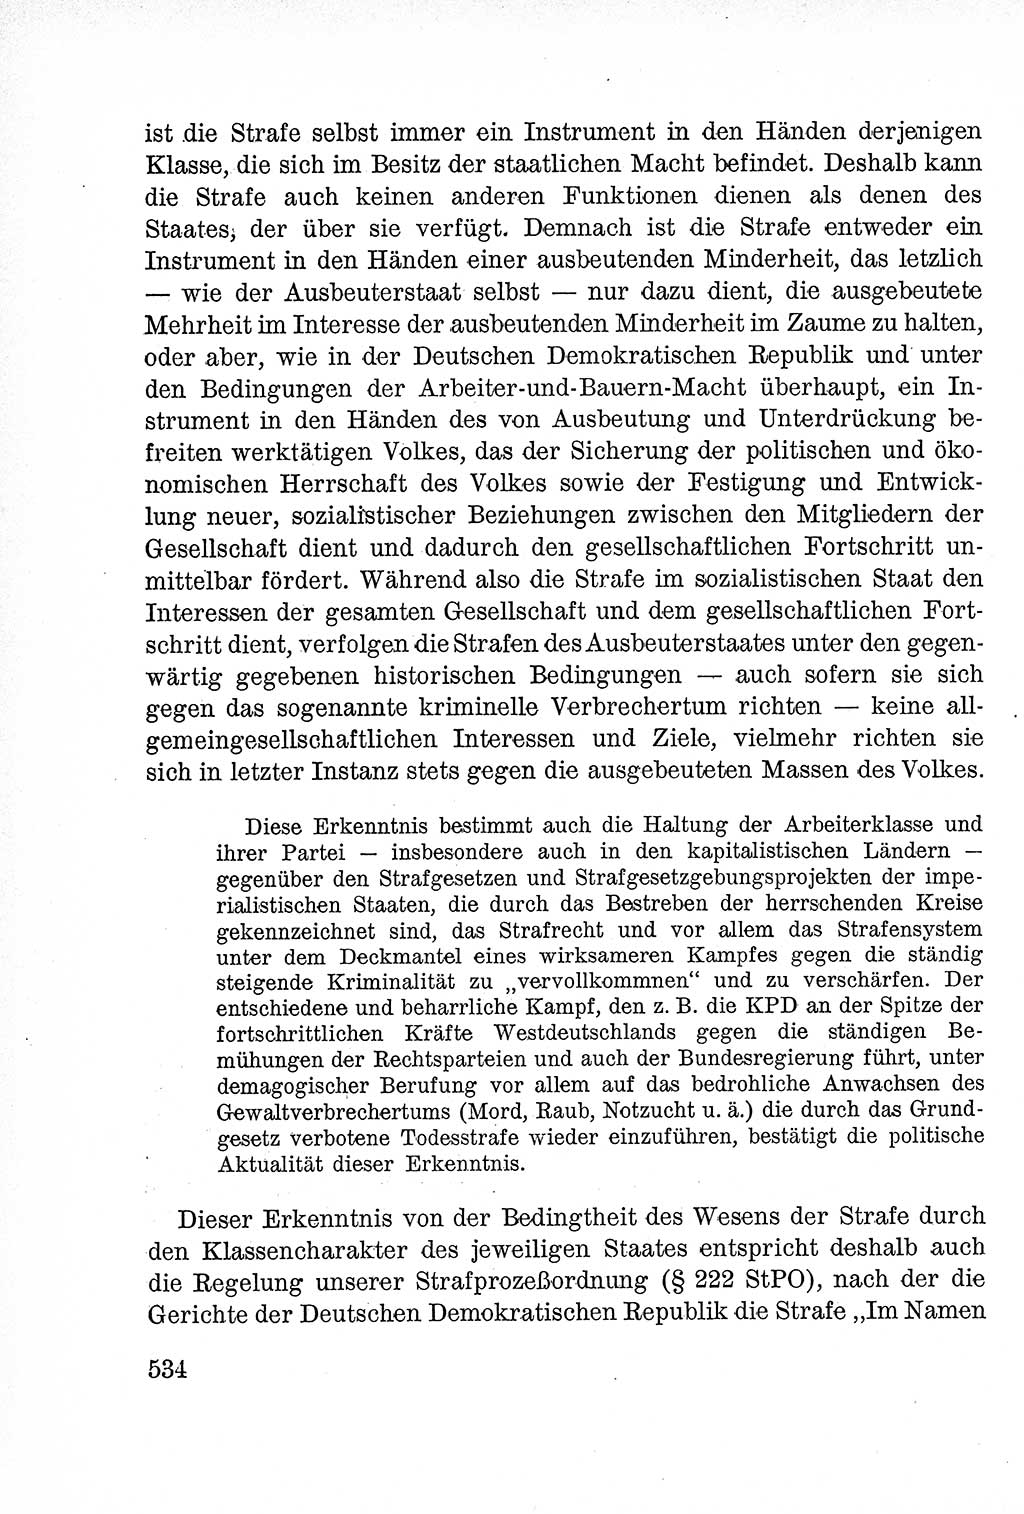 Lehrbuch des Strafrechts der Deutschen Demokratischen Republik (DDR), Allgemeiner Teil 1957, Seite 534 (Lb. Strafr. DDR AT 1957, S. 534)